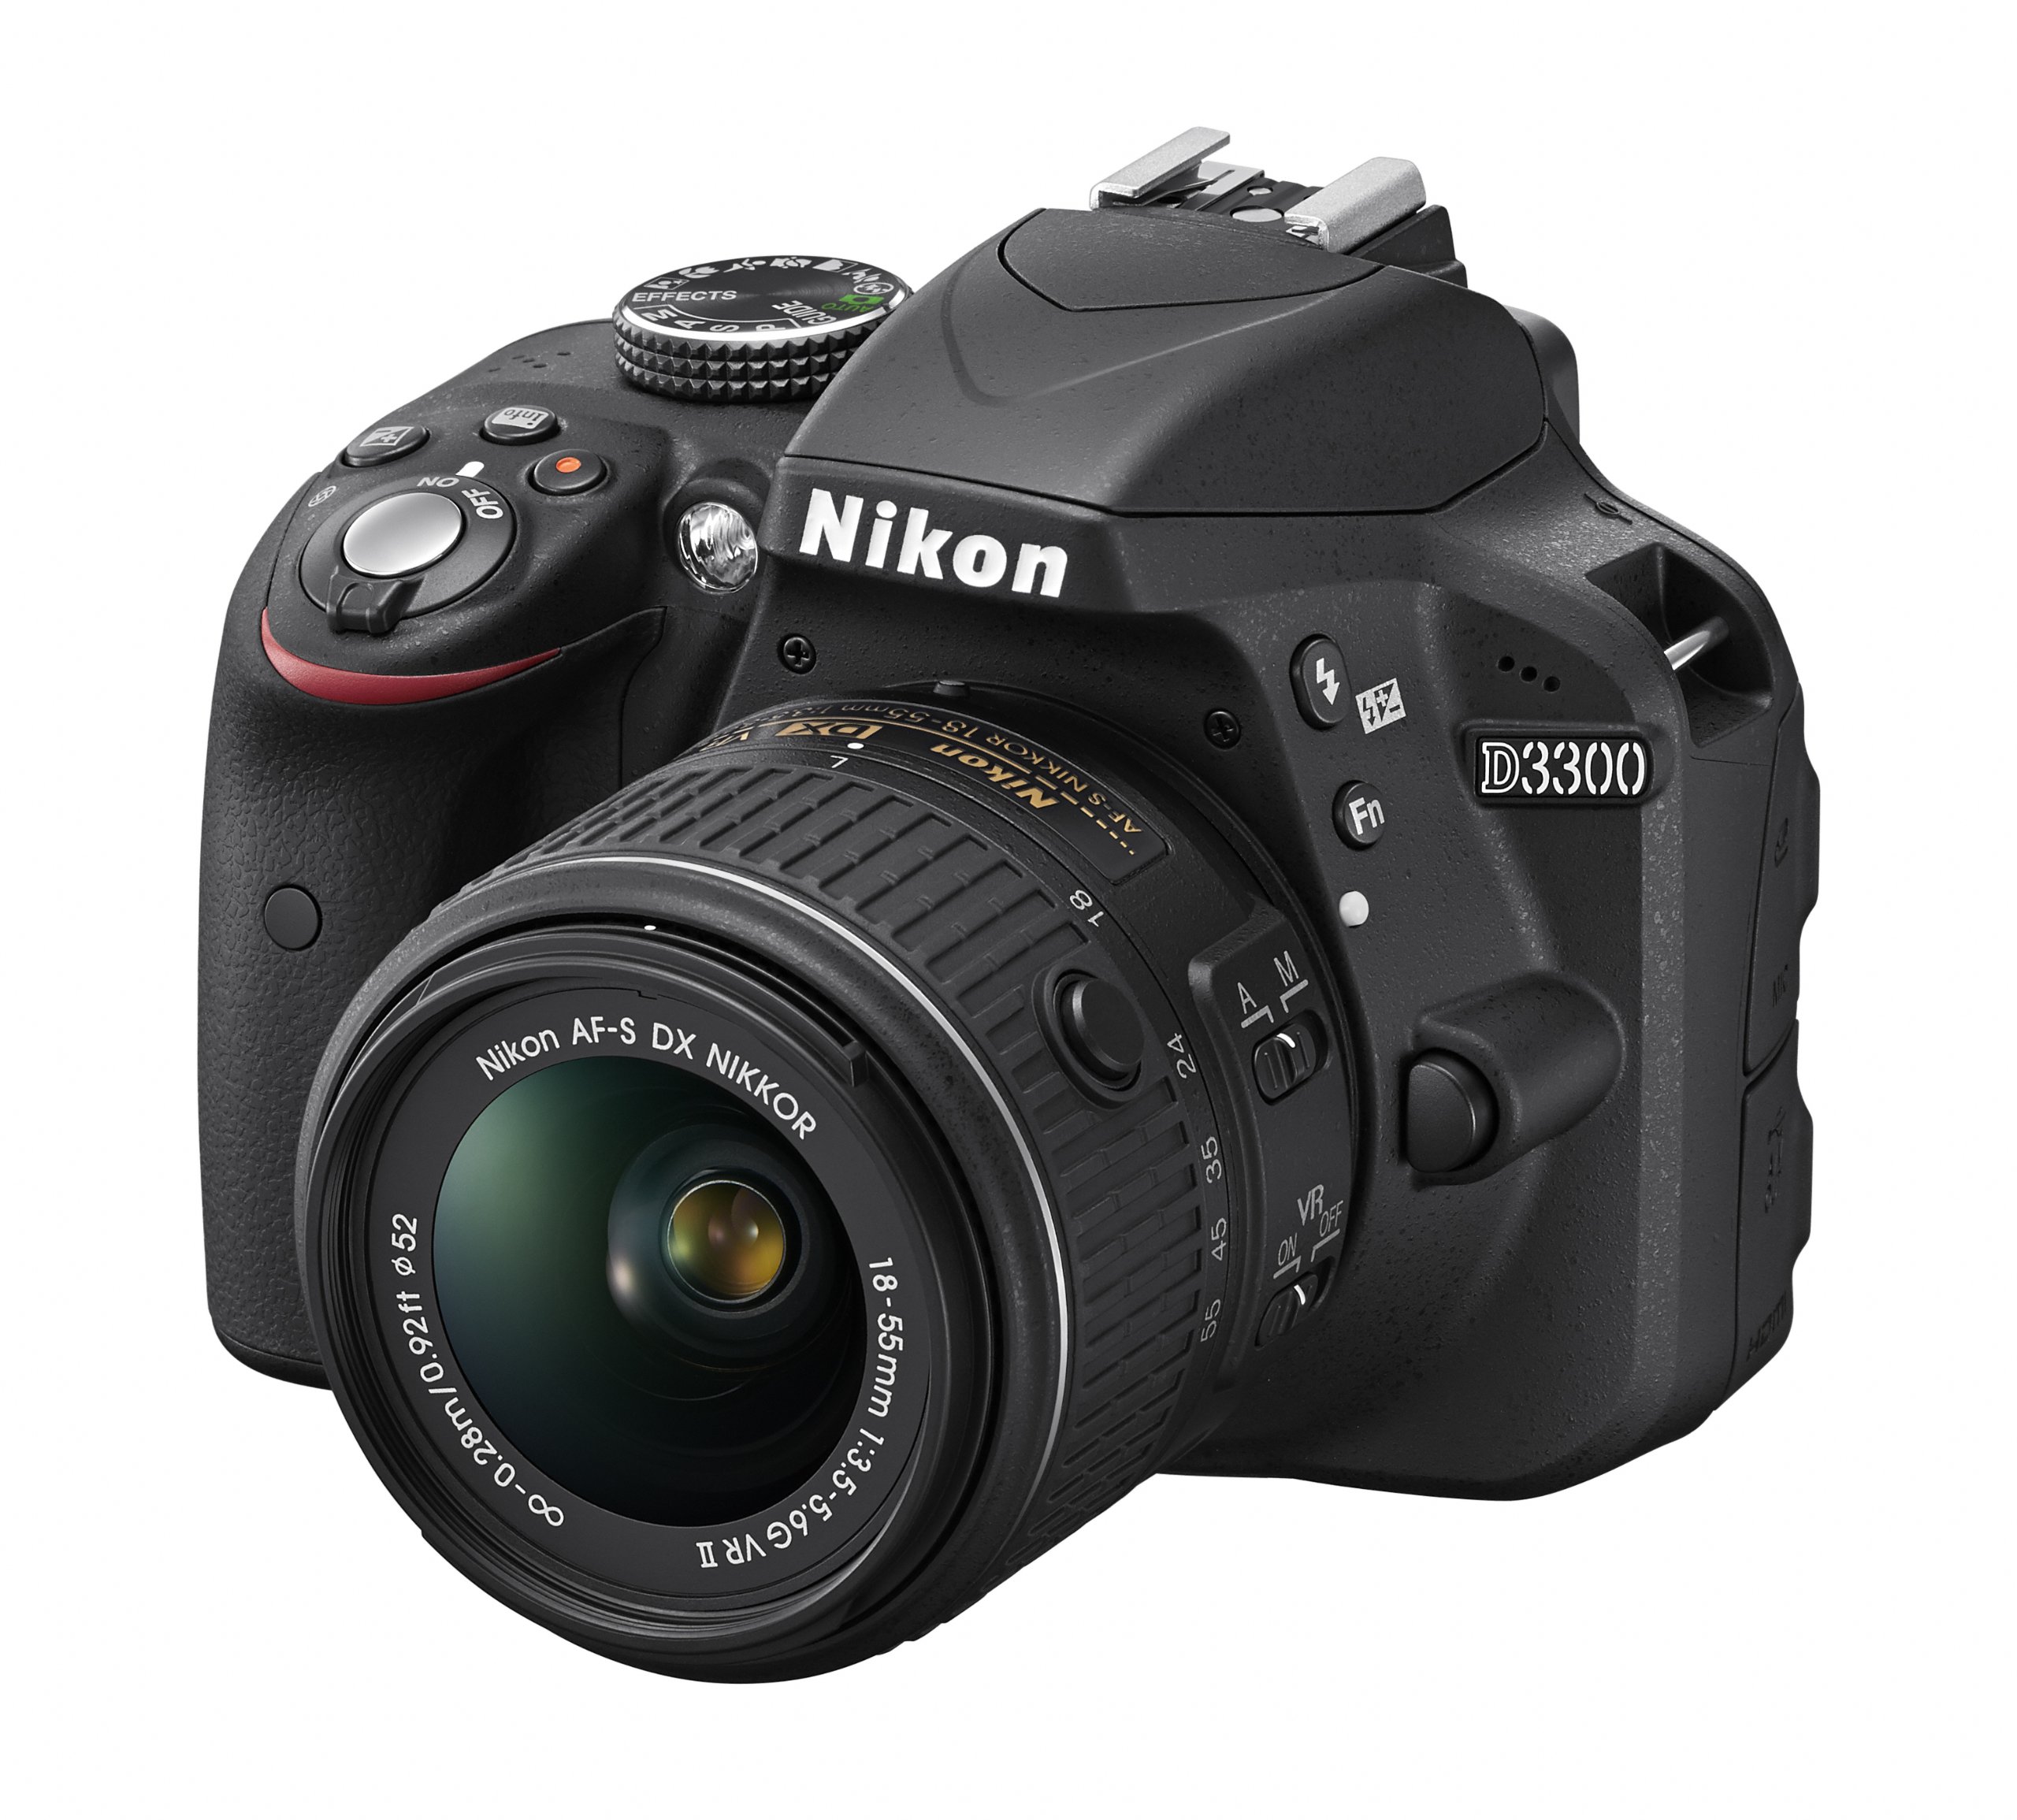 Nikon D3300 24.2 MP CMOS Digital SLR with Auto Focus-S DX Nikkor 18-55mm f/3.5-5.6G VR II Zoom Lens (Black)